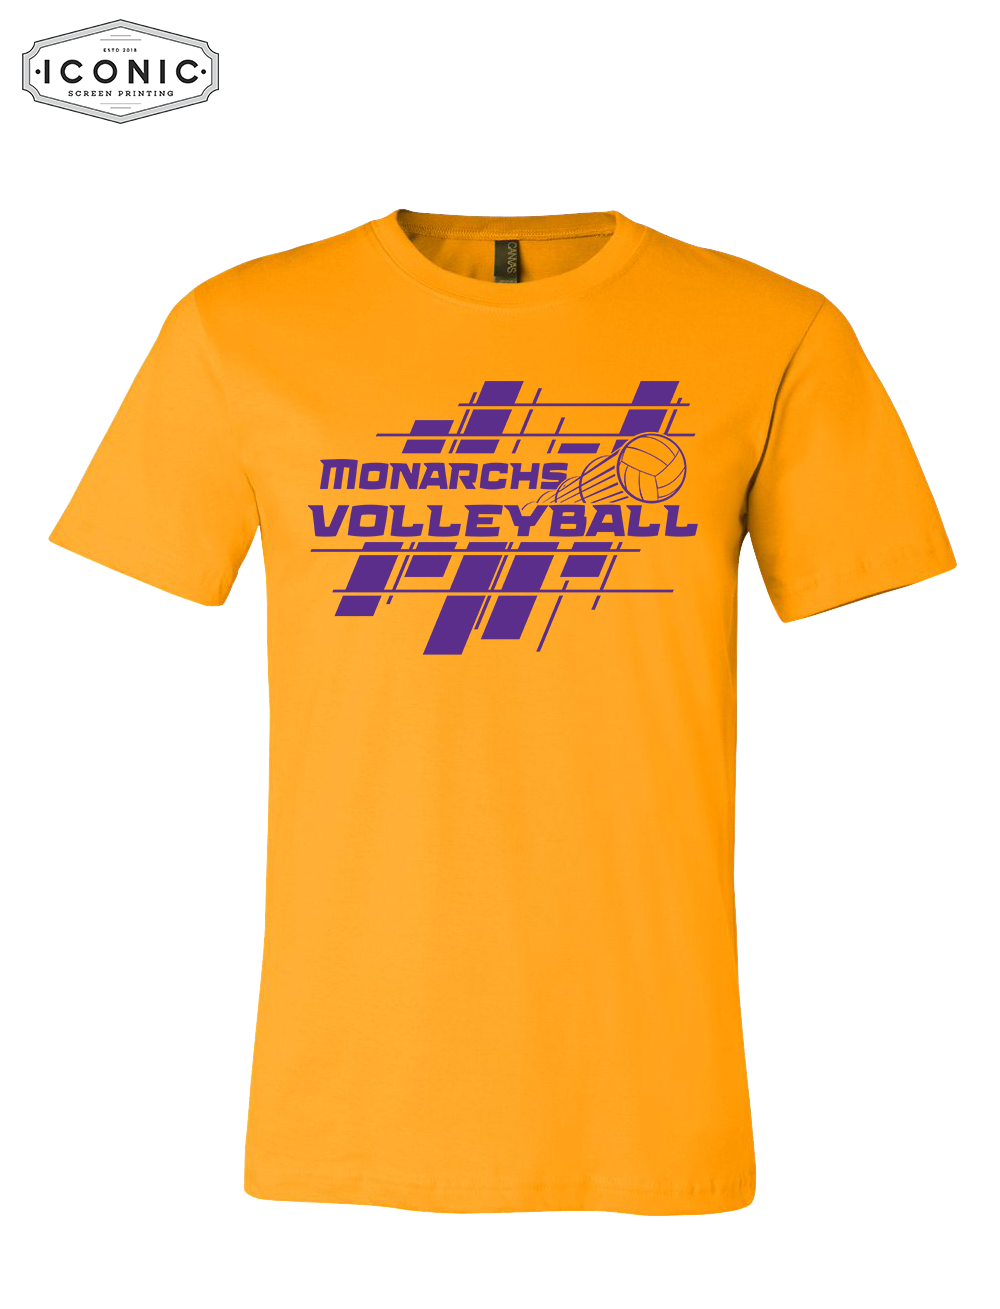 Monarchs VolleyBall - Unisex Jersey Tee